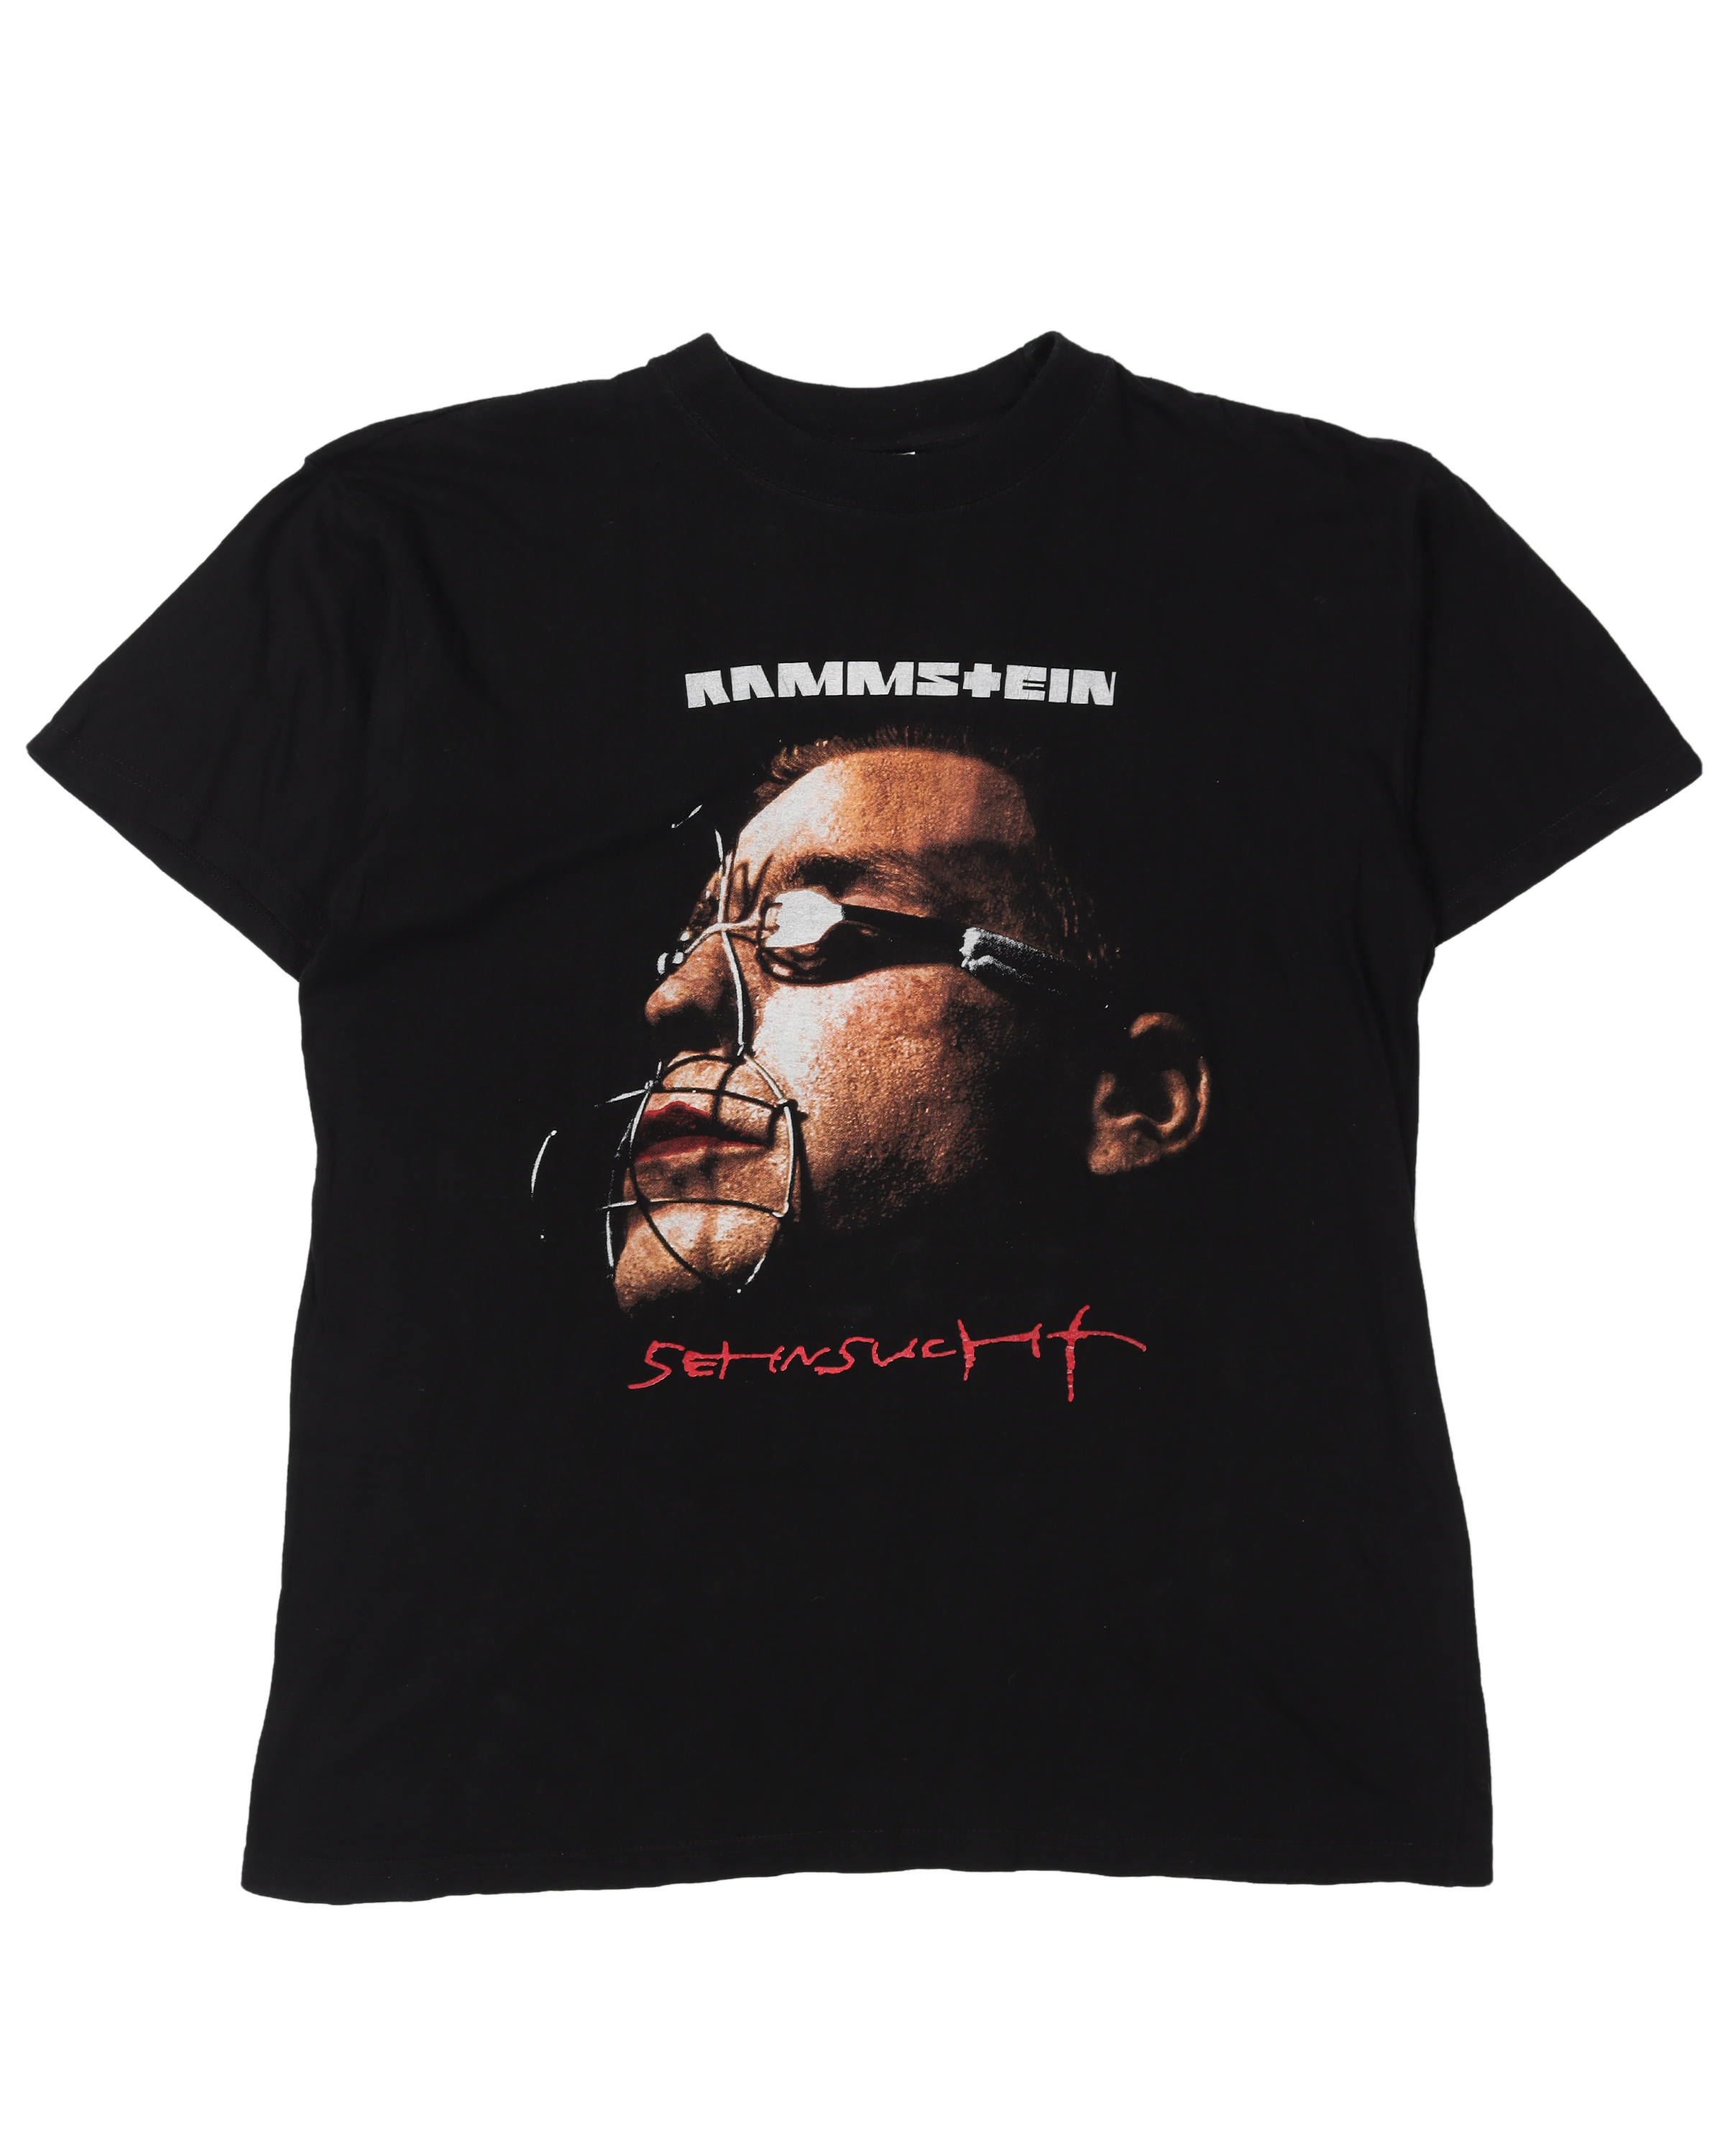 Rammstein "Sehnsucht" T-Shirt